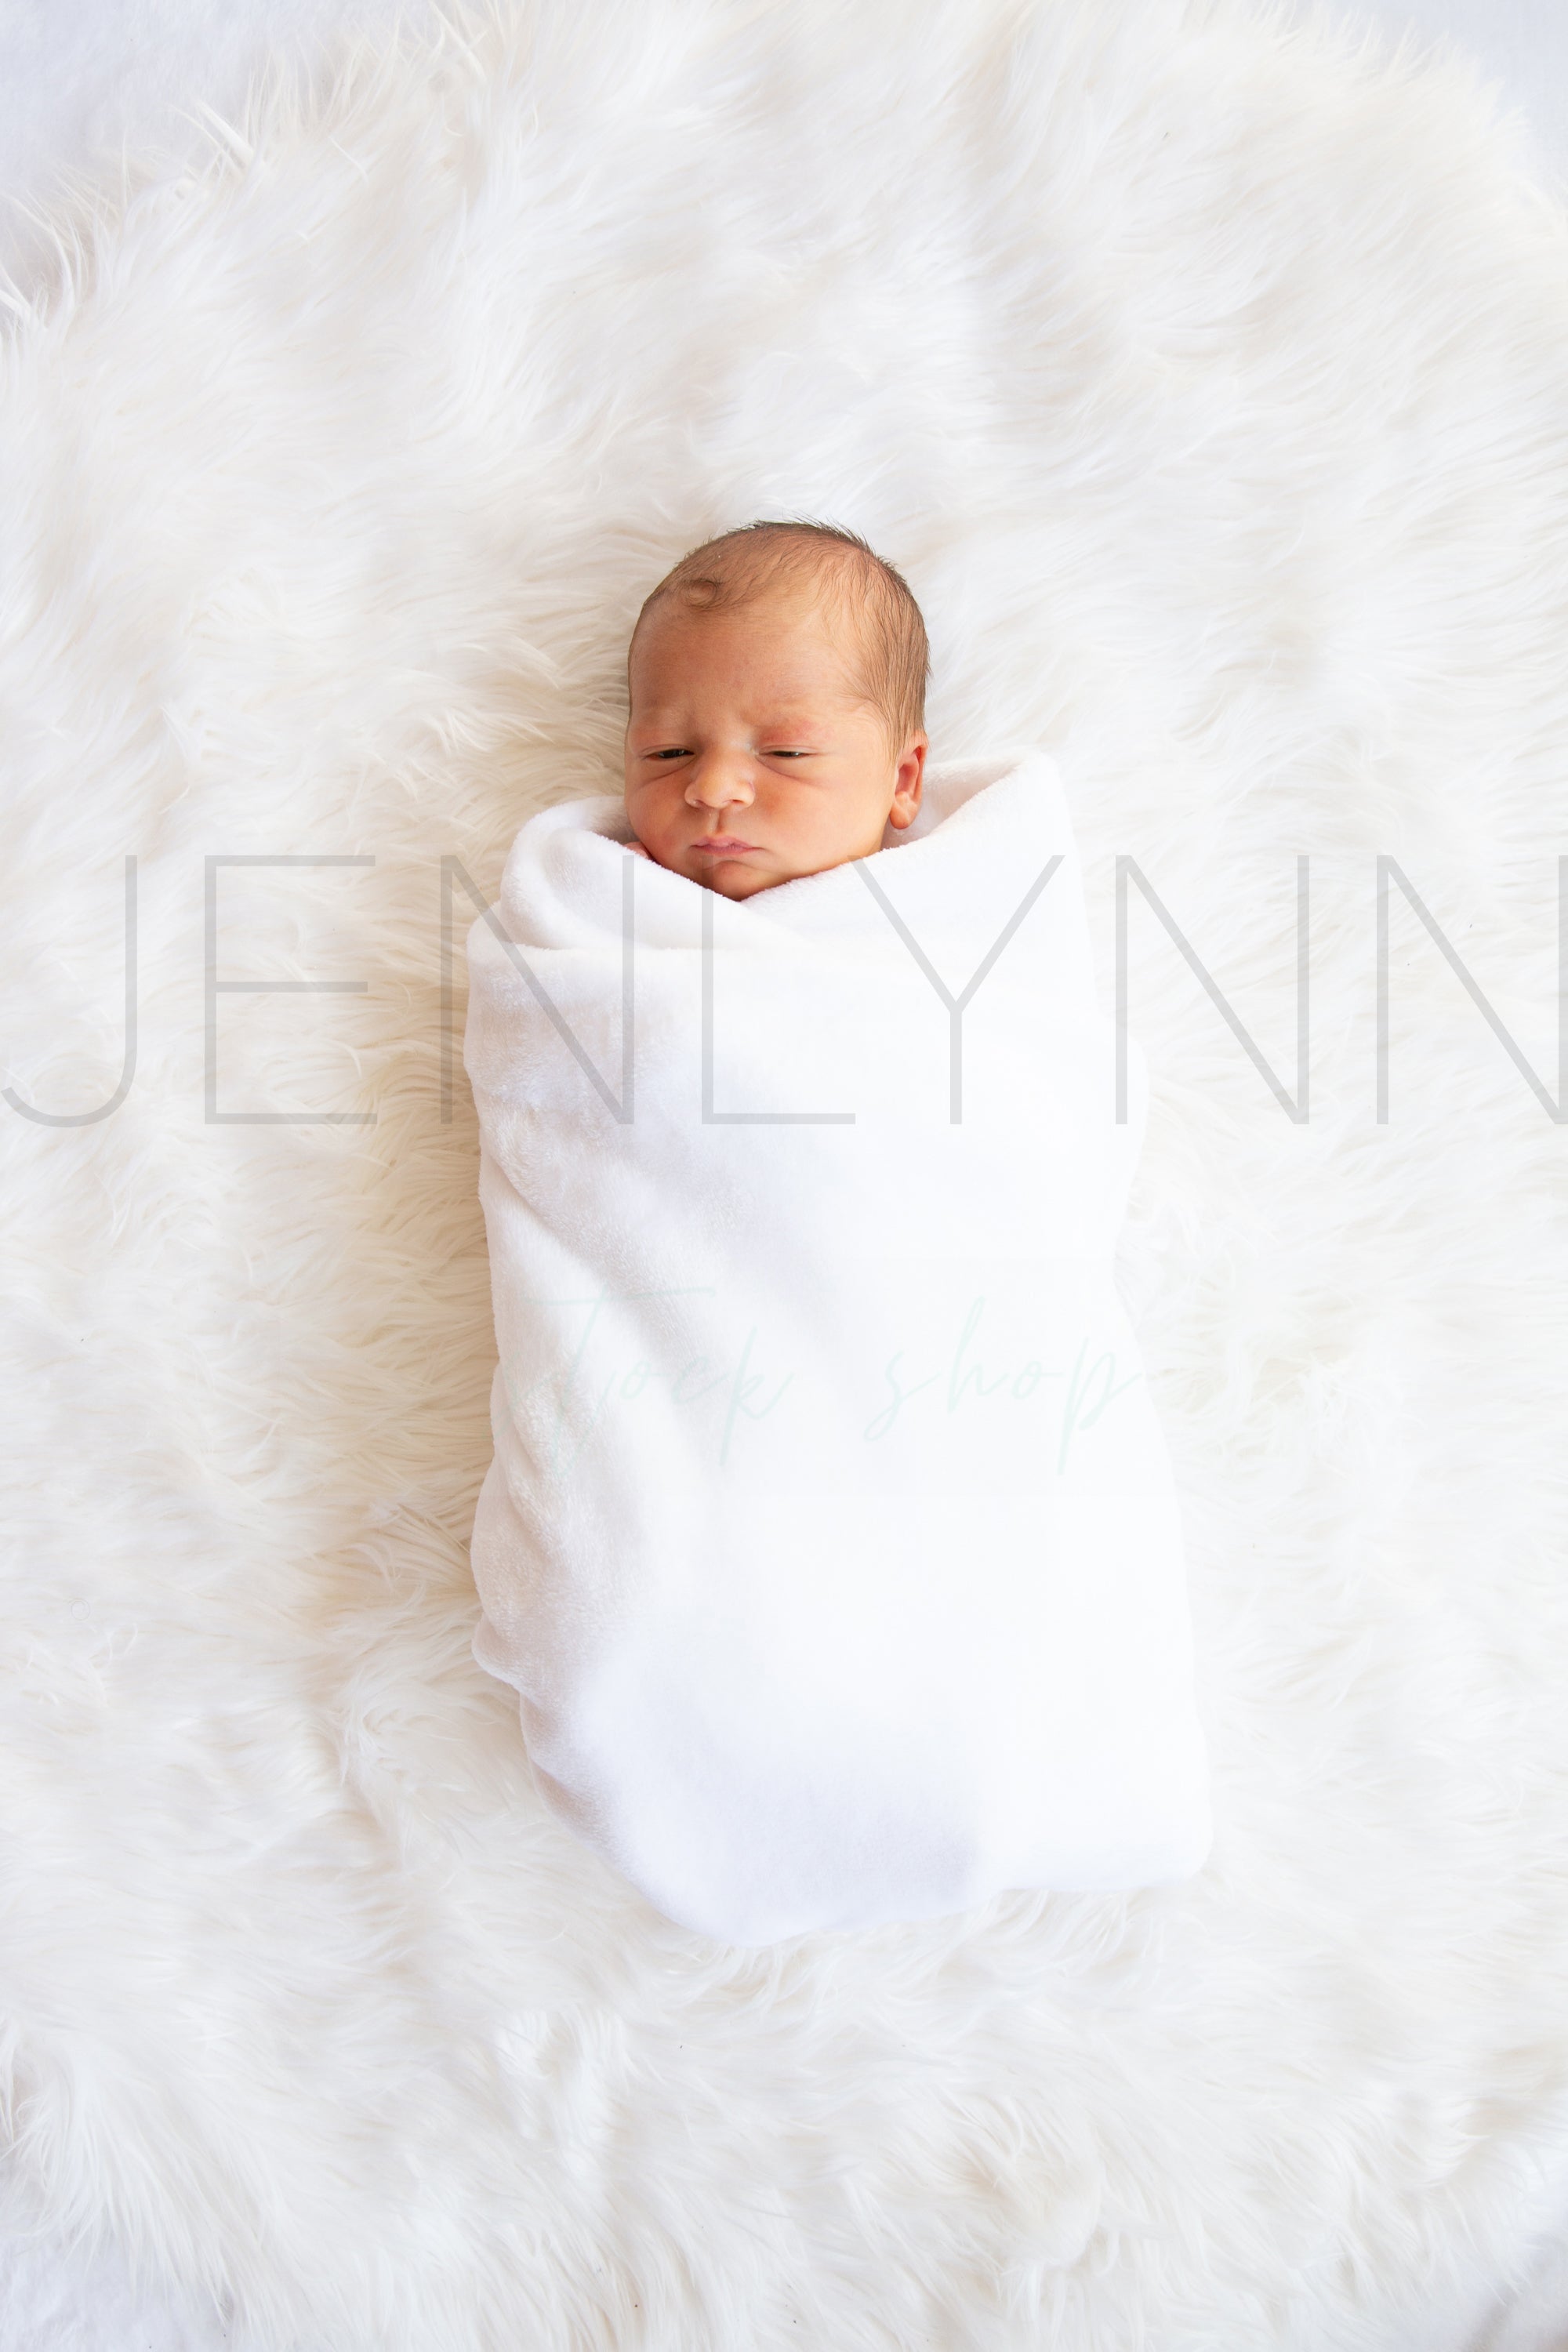 Minky Baby Blanket on Baby Boy Mockup #JZ23 PSD